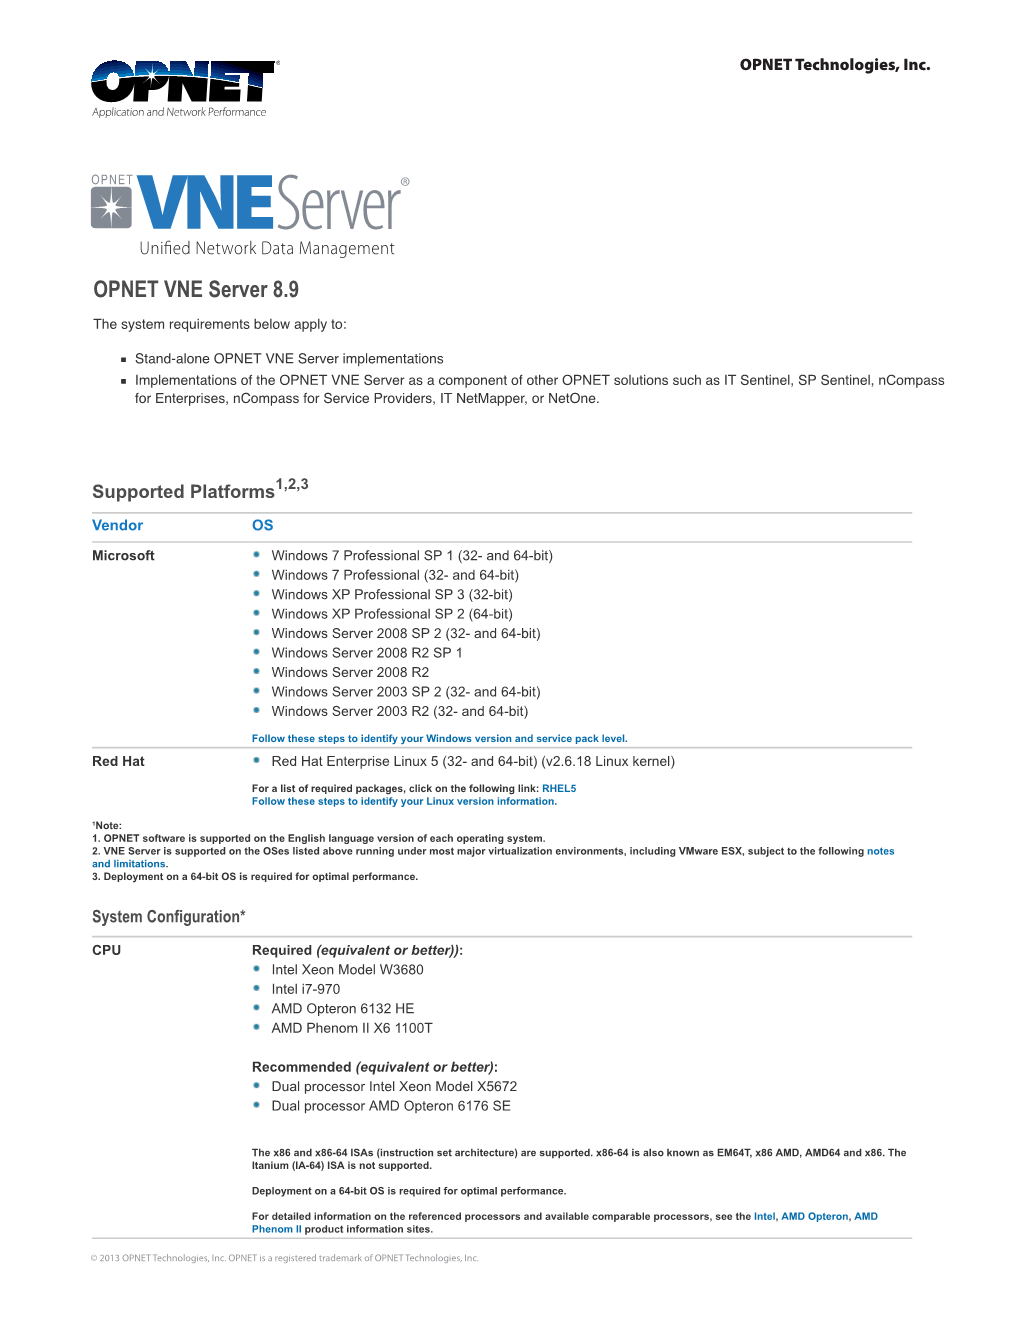 OPNET VNE Server 8.9